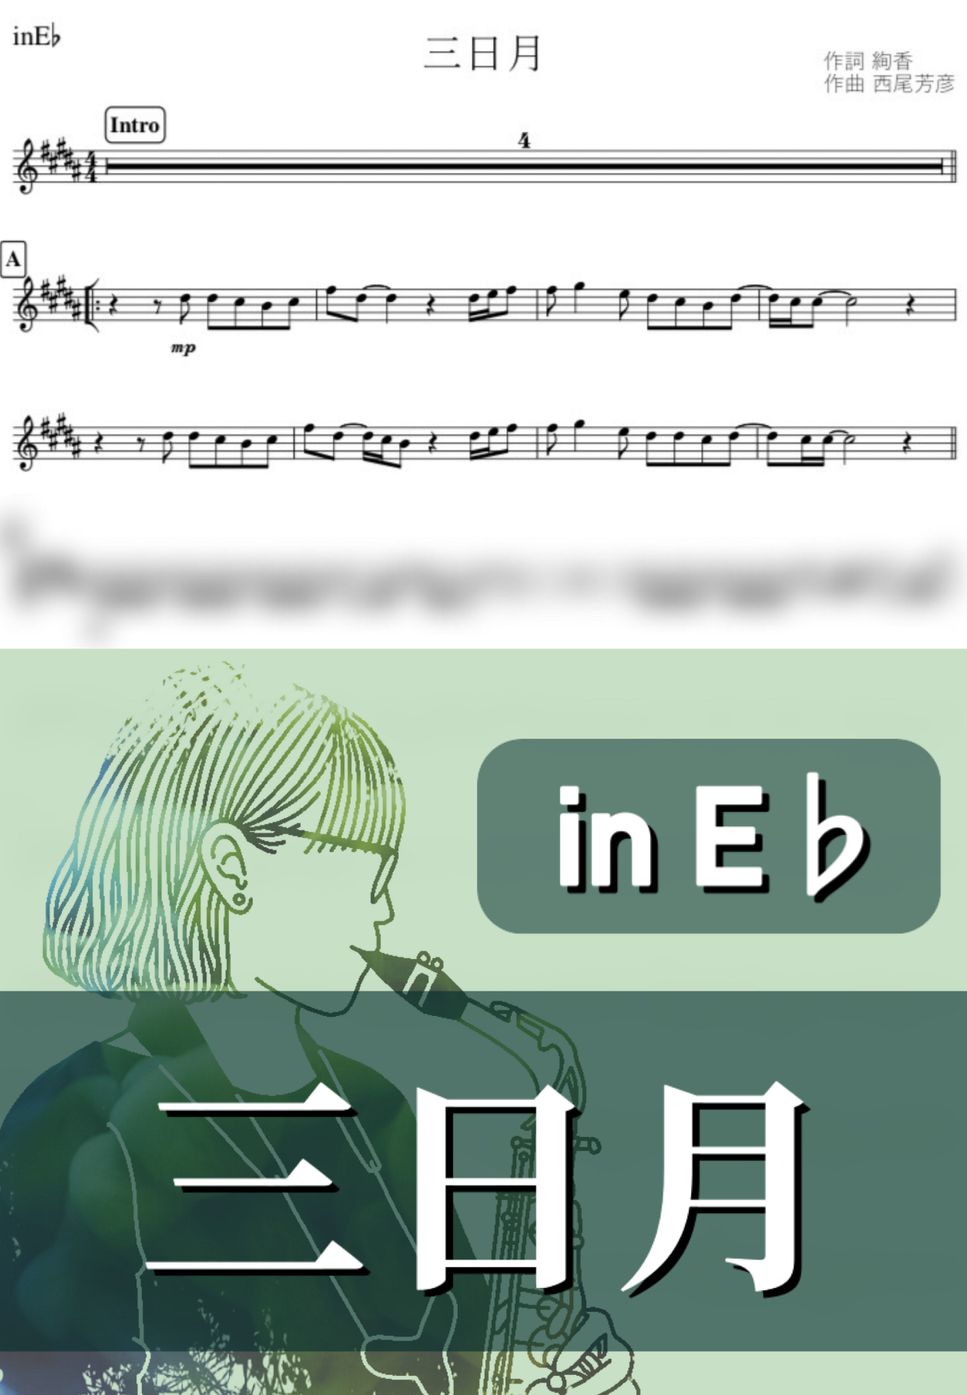 絢香 - 三日月 (E♭) by kanamusic